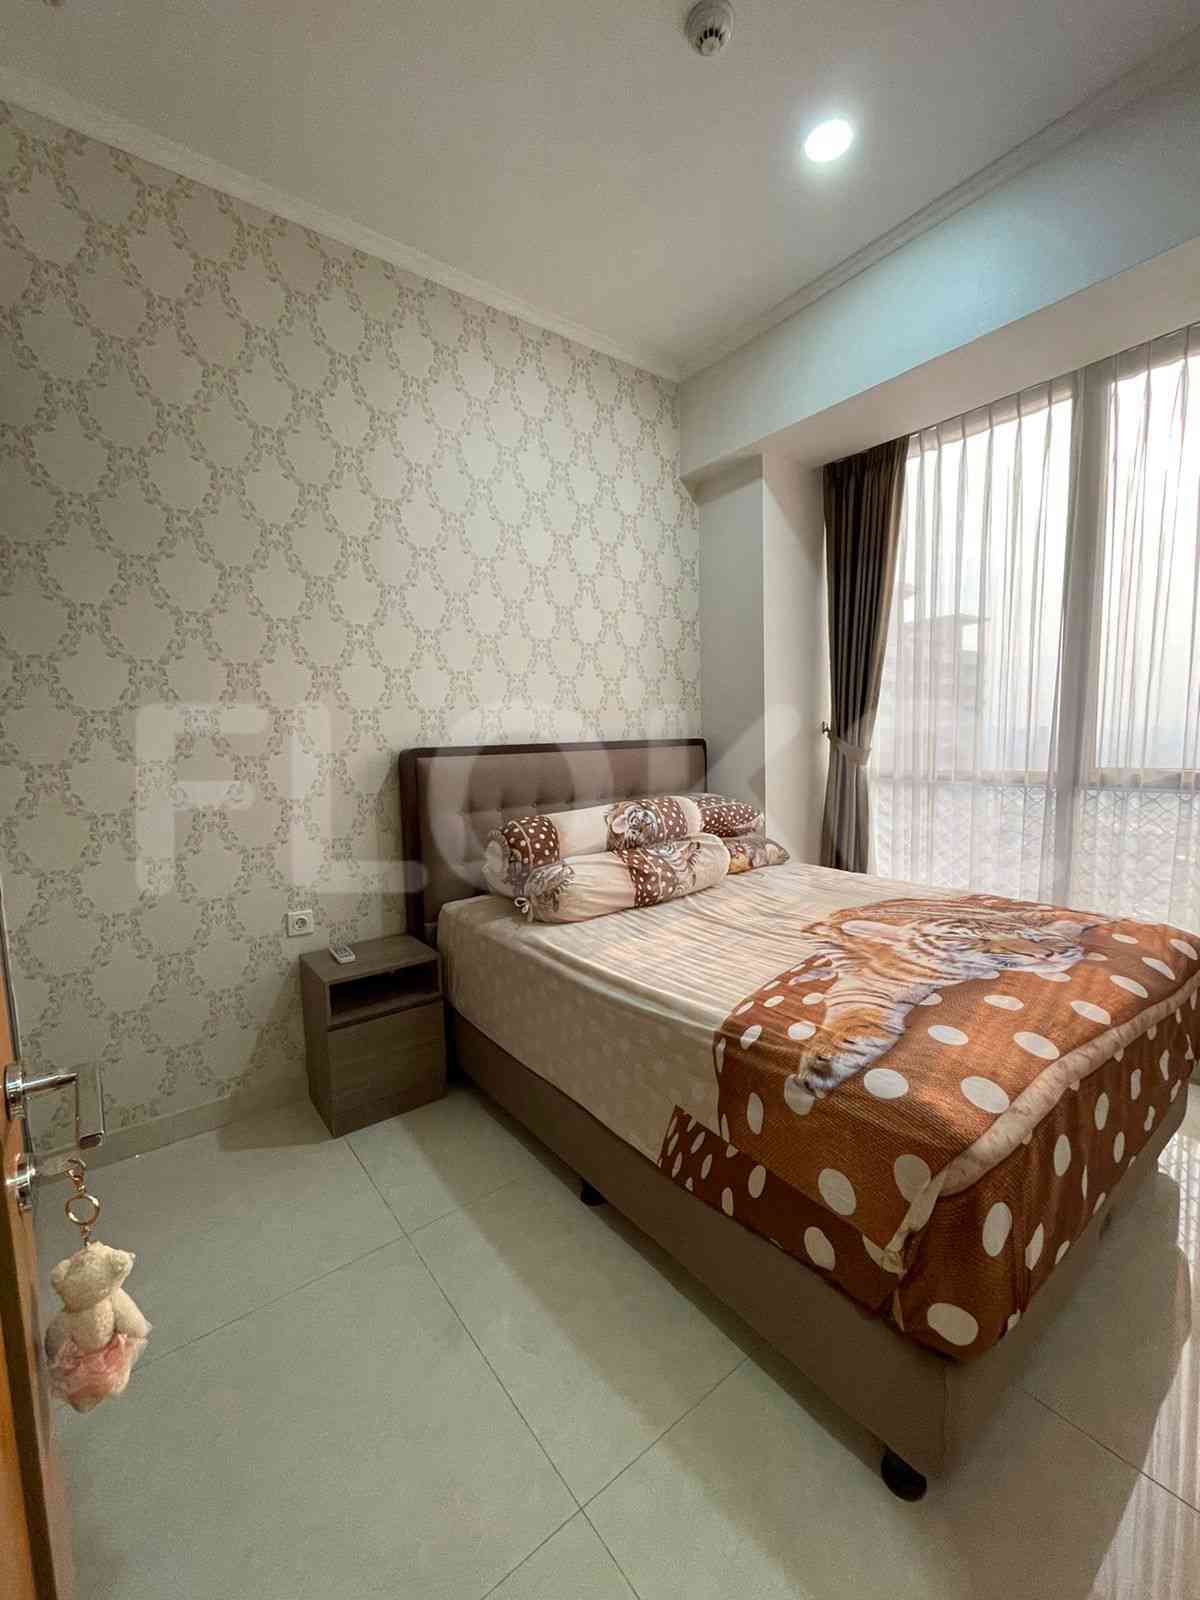 2 Bedroom on 15th Floor for Rent in Taman Anggrek Residence - fta42e 2